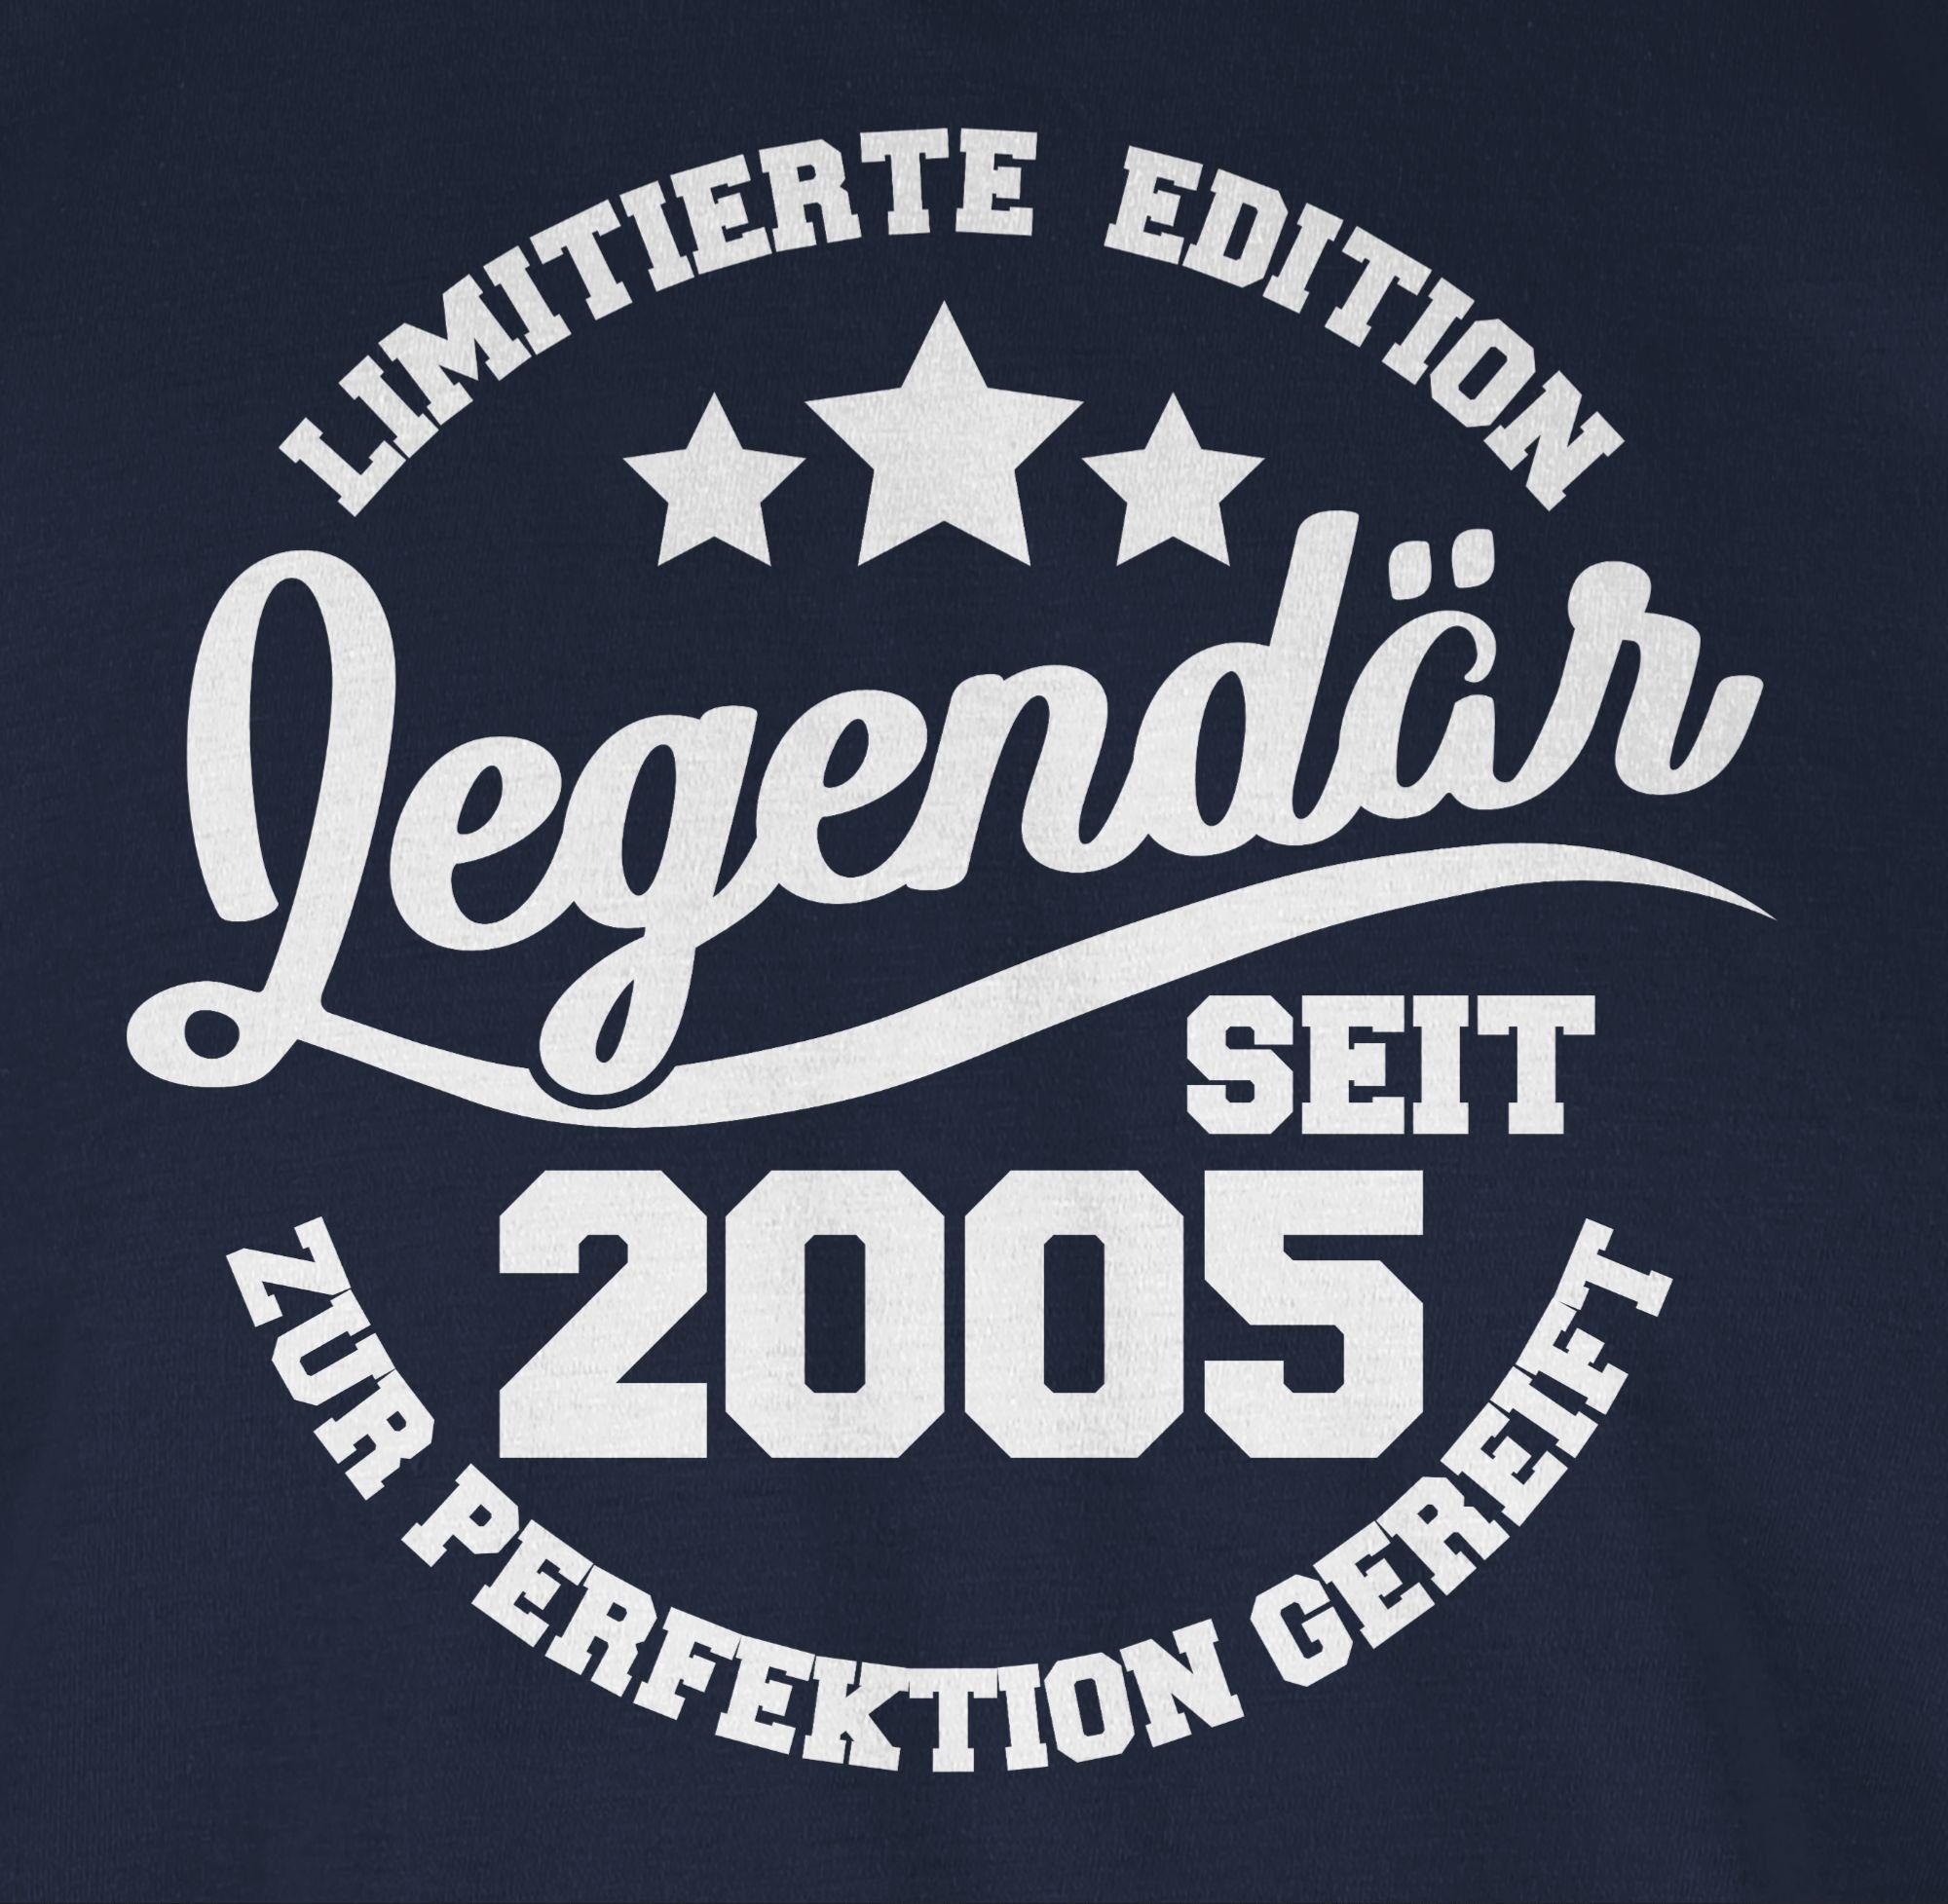 Legendär T-Shirt Blau 2005 18. Shirtracer Navy seit Geburtstag 2